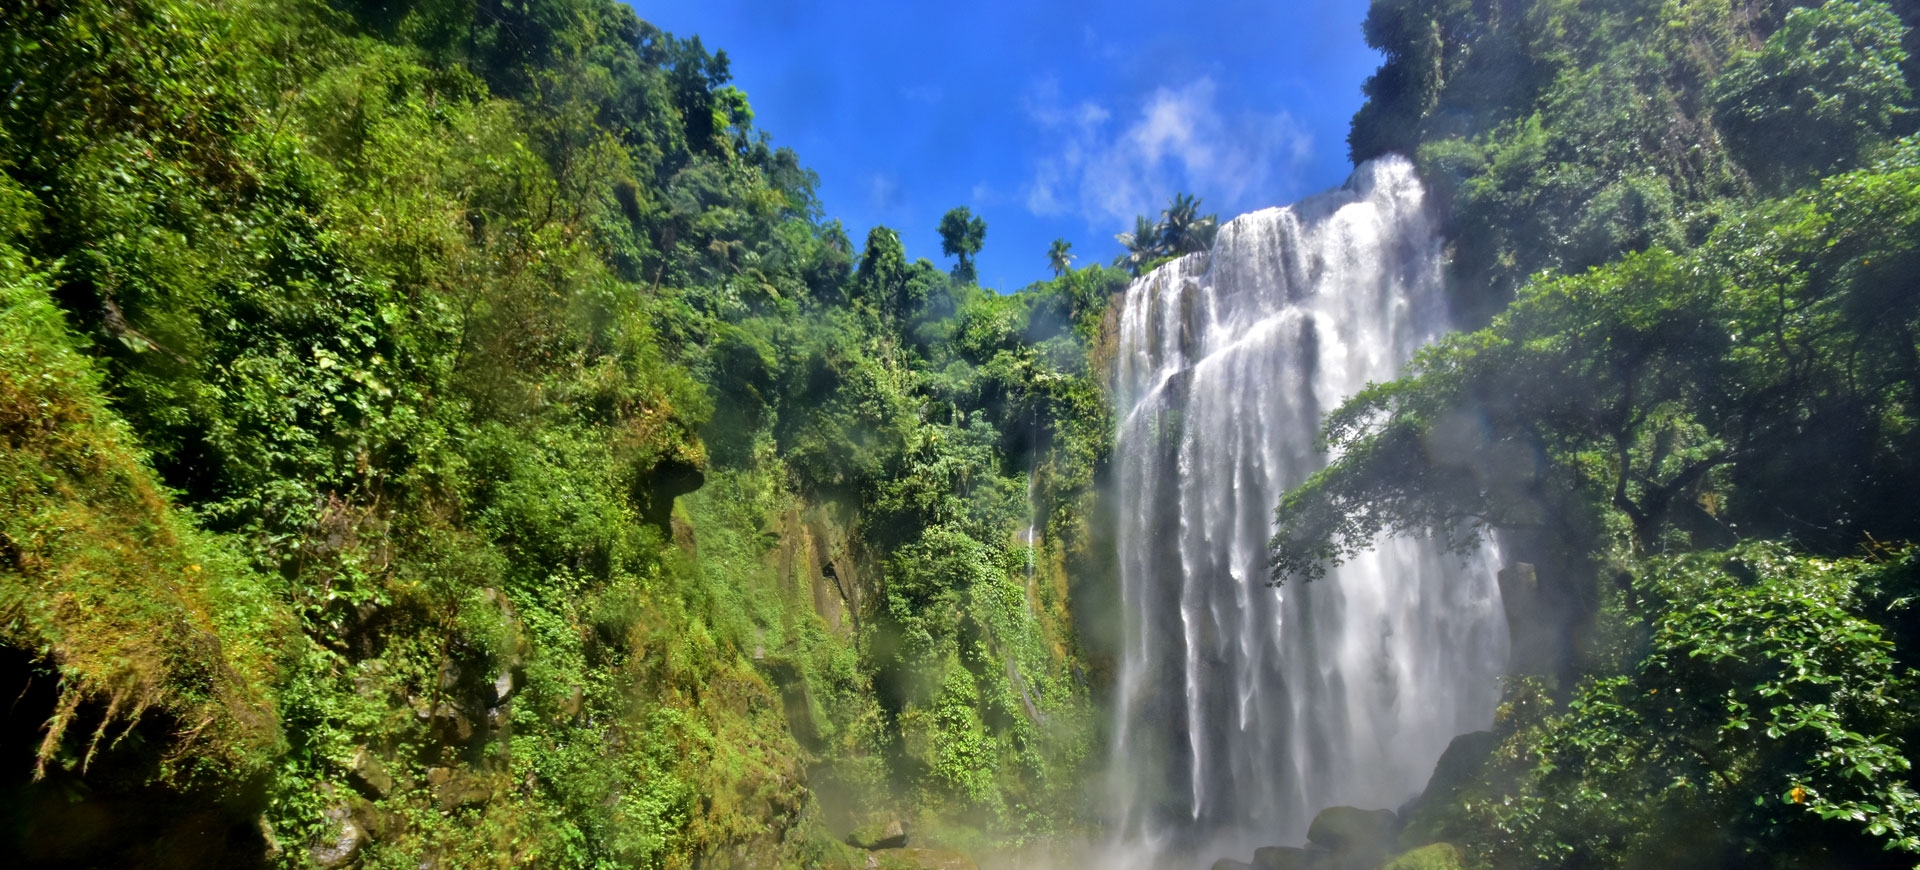 The Waterfalls of Laguna: Hulugan and Pagsanjan (Cavinti)